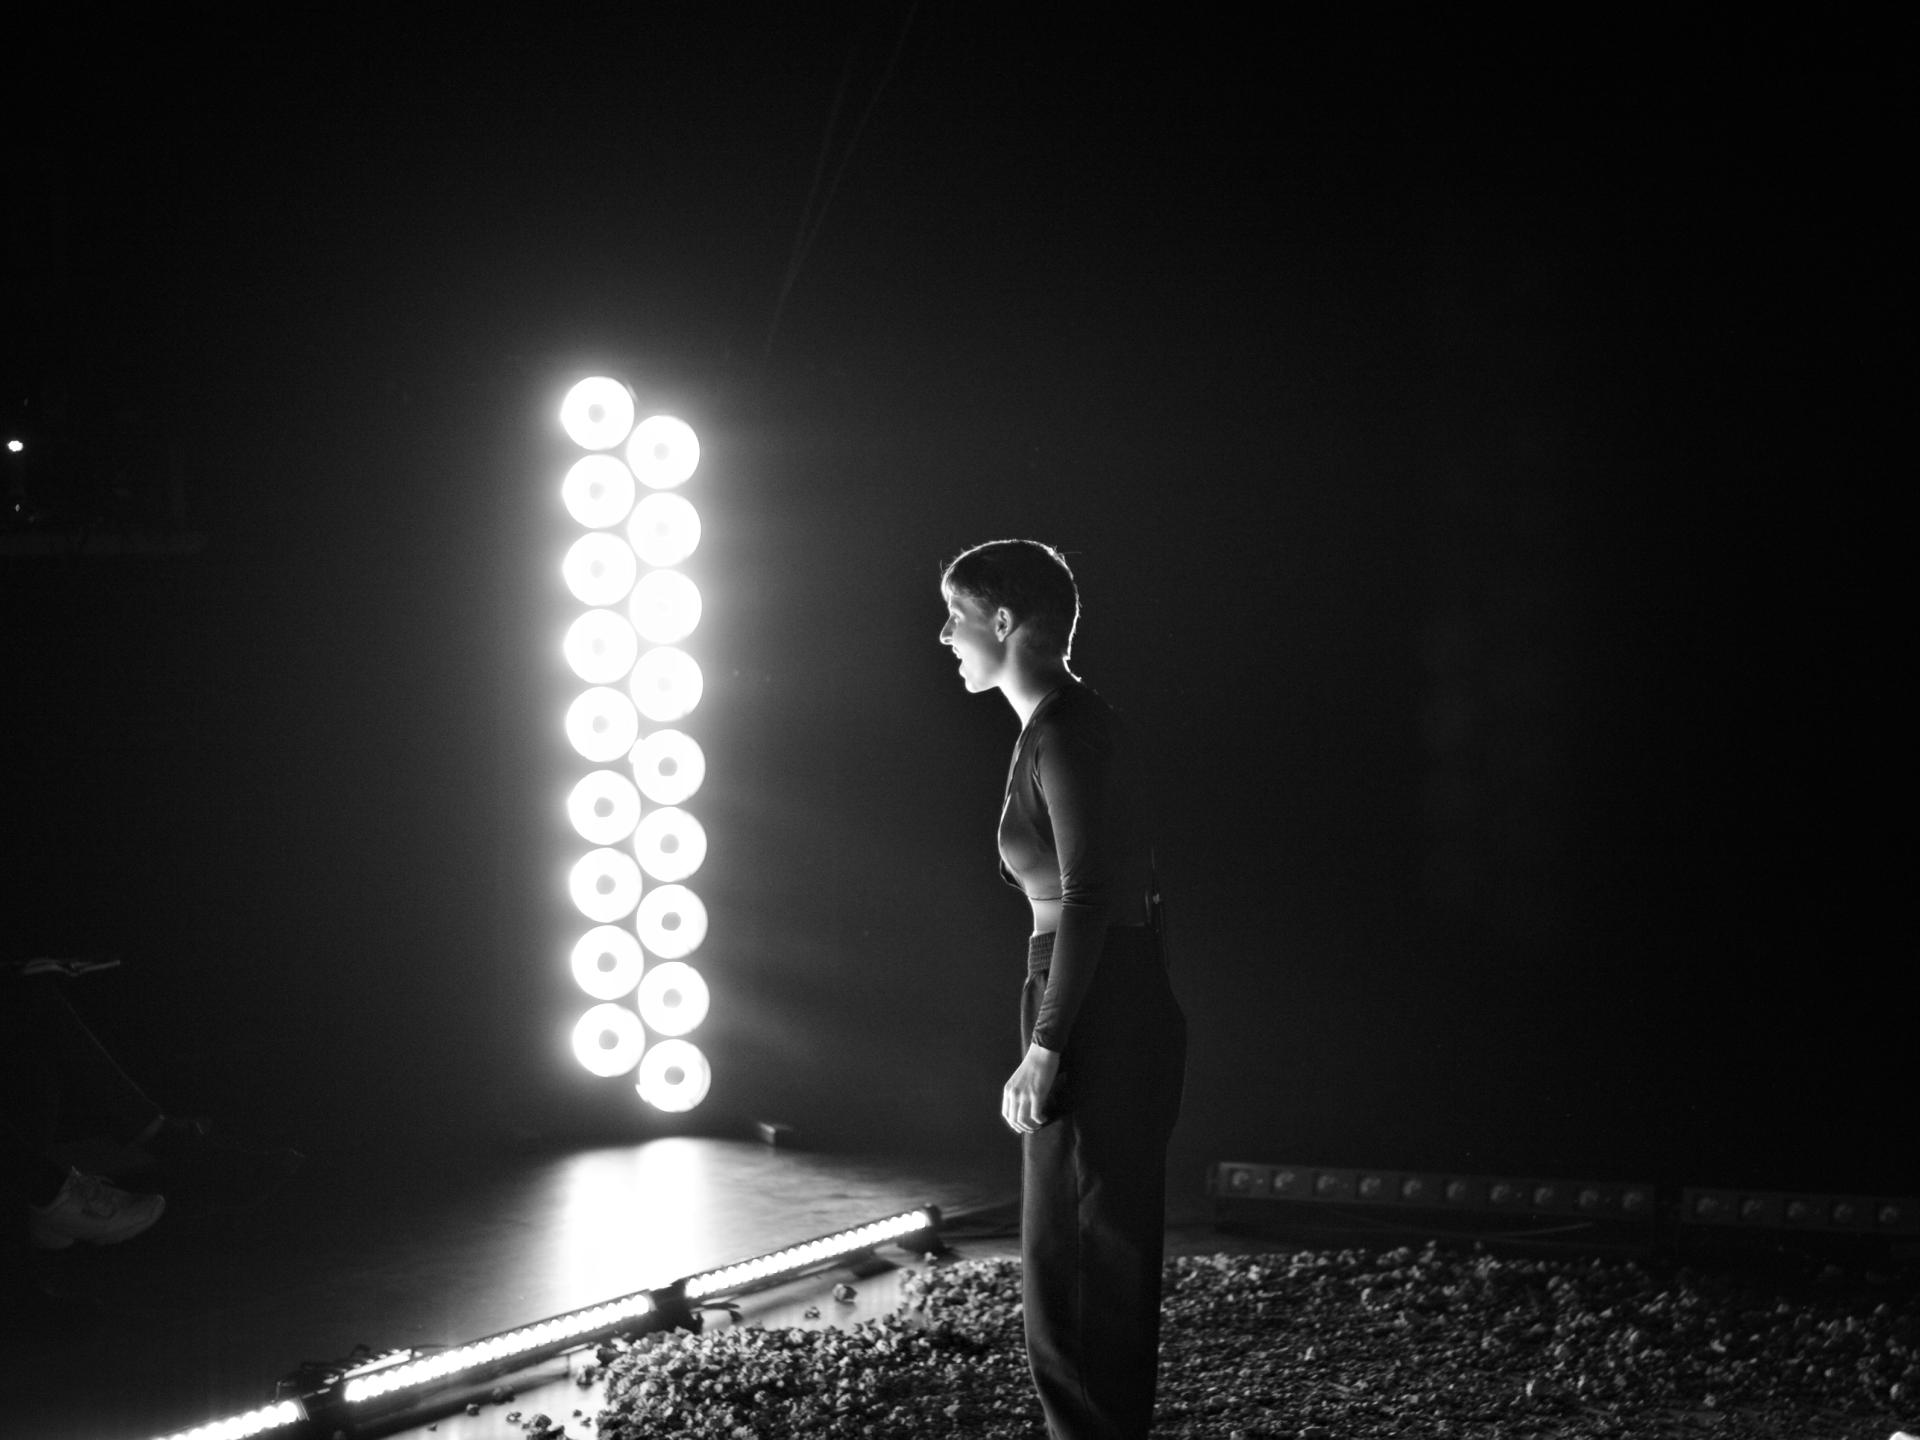 Eine Frau steht im Licht mehrerer Scheinwerfer und redet leidenschaftlich (Bild ist schwarz-weiss).